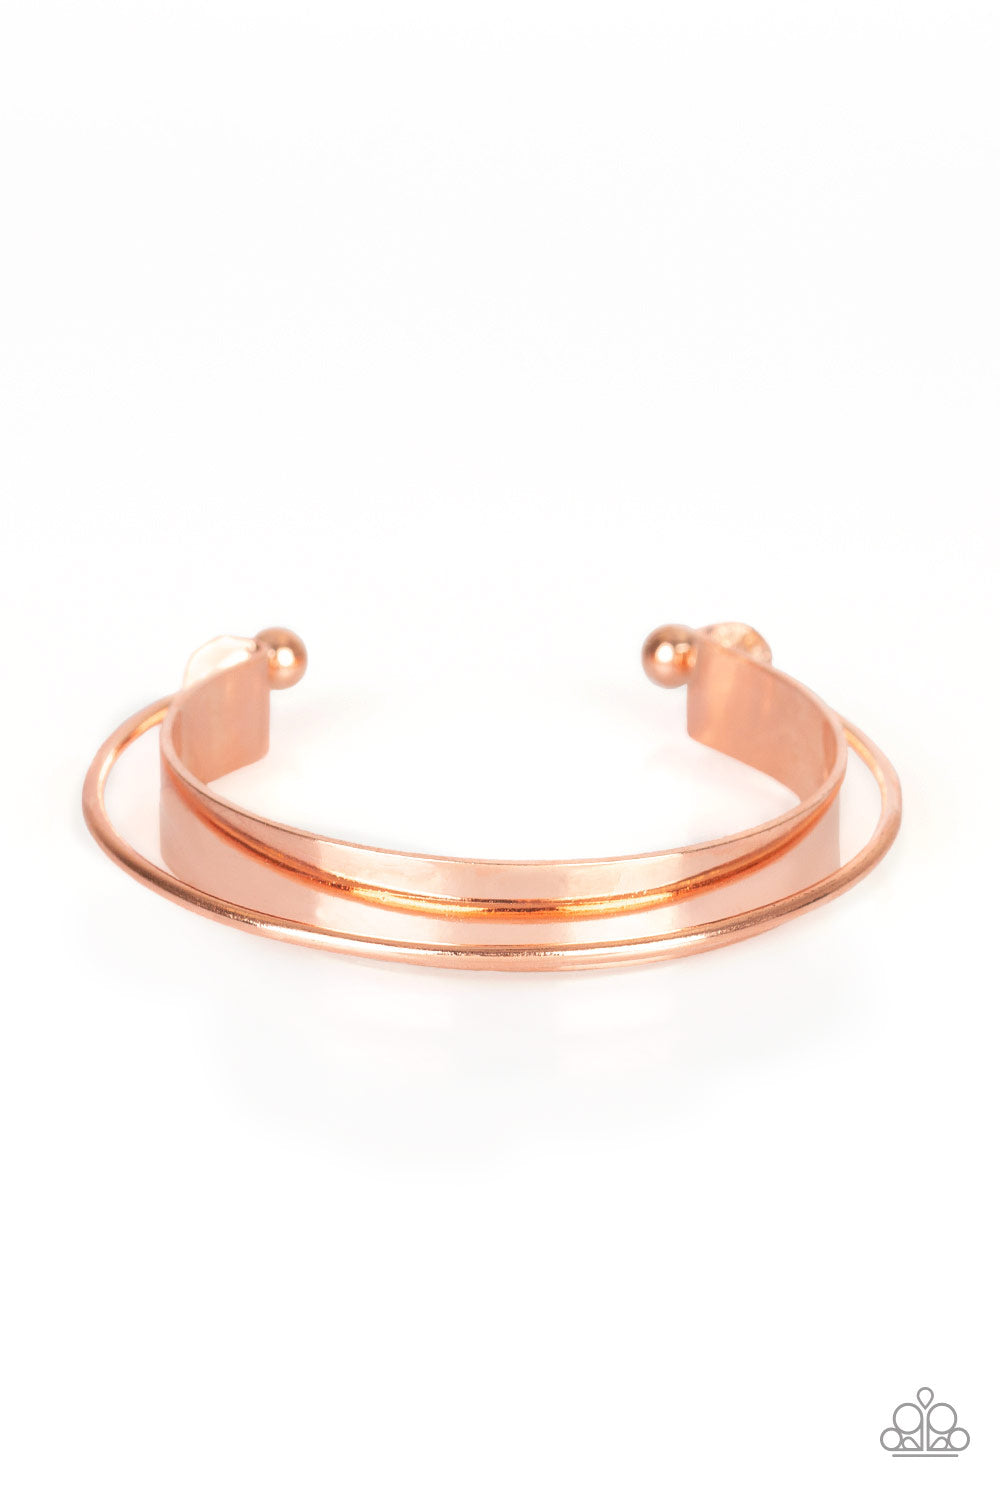 Avant-MOD - Copper - Bracelets - Paparazzi Accessories